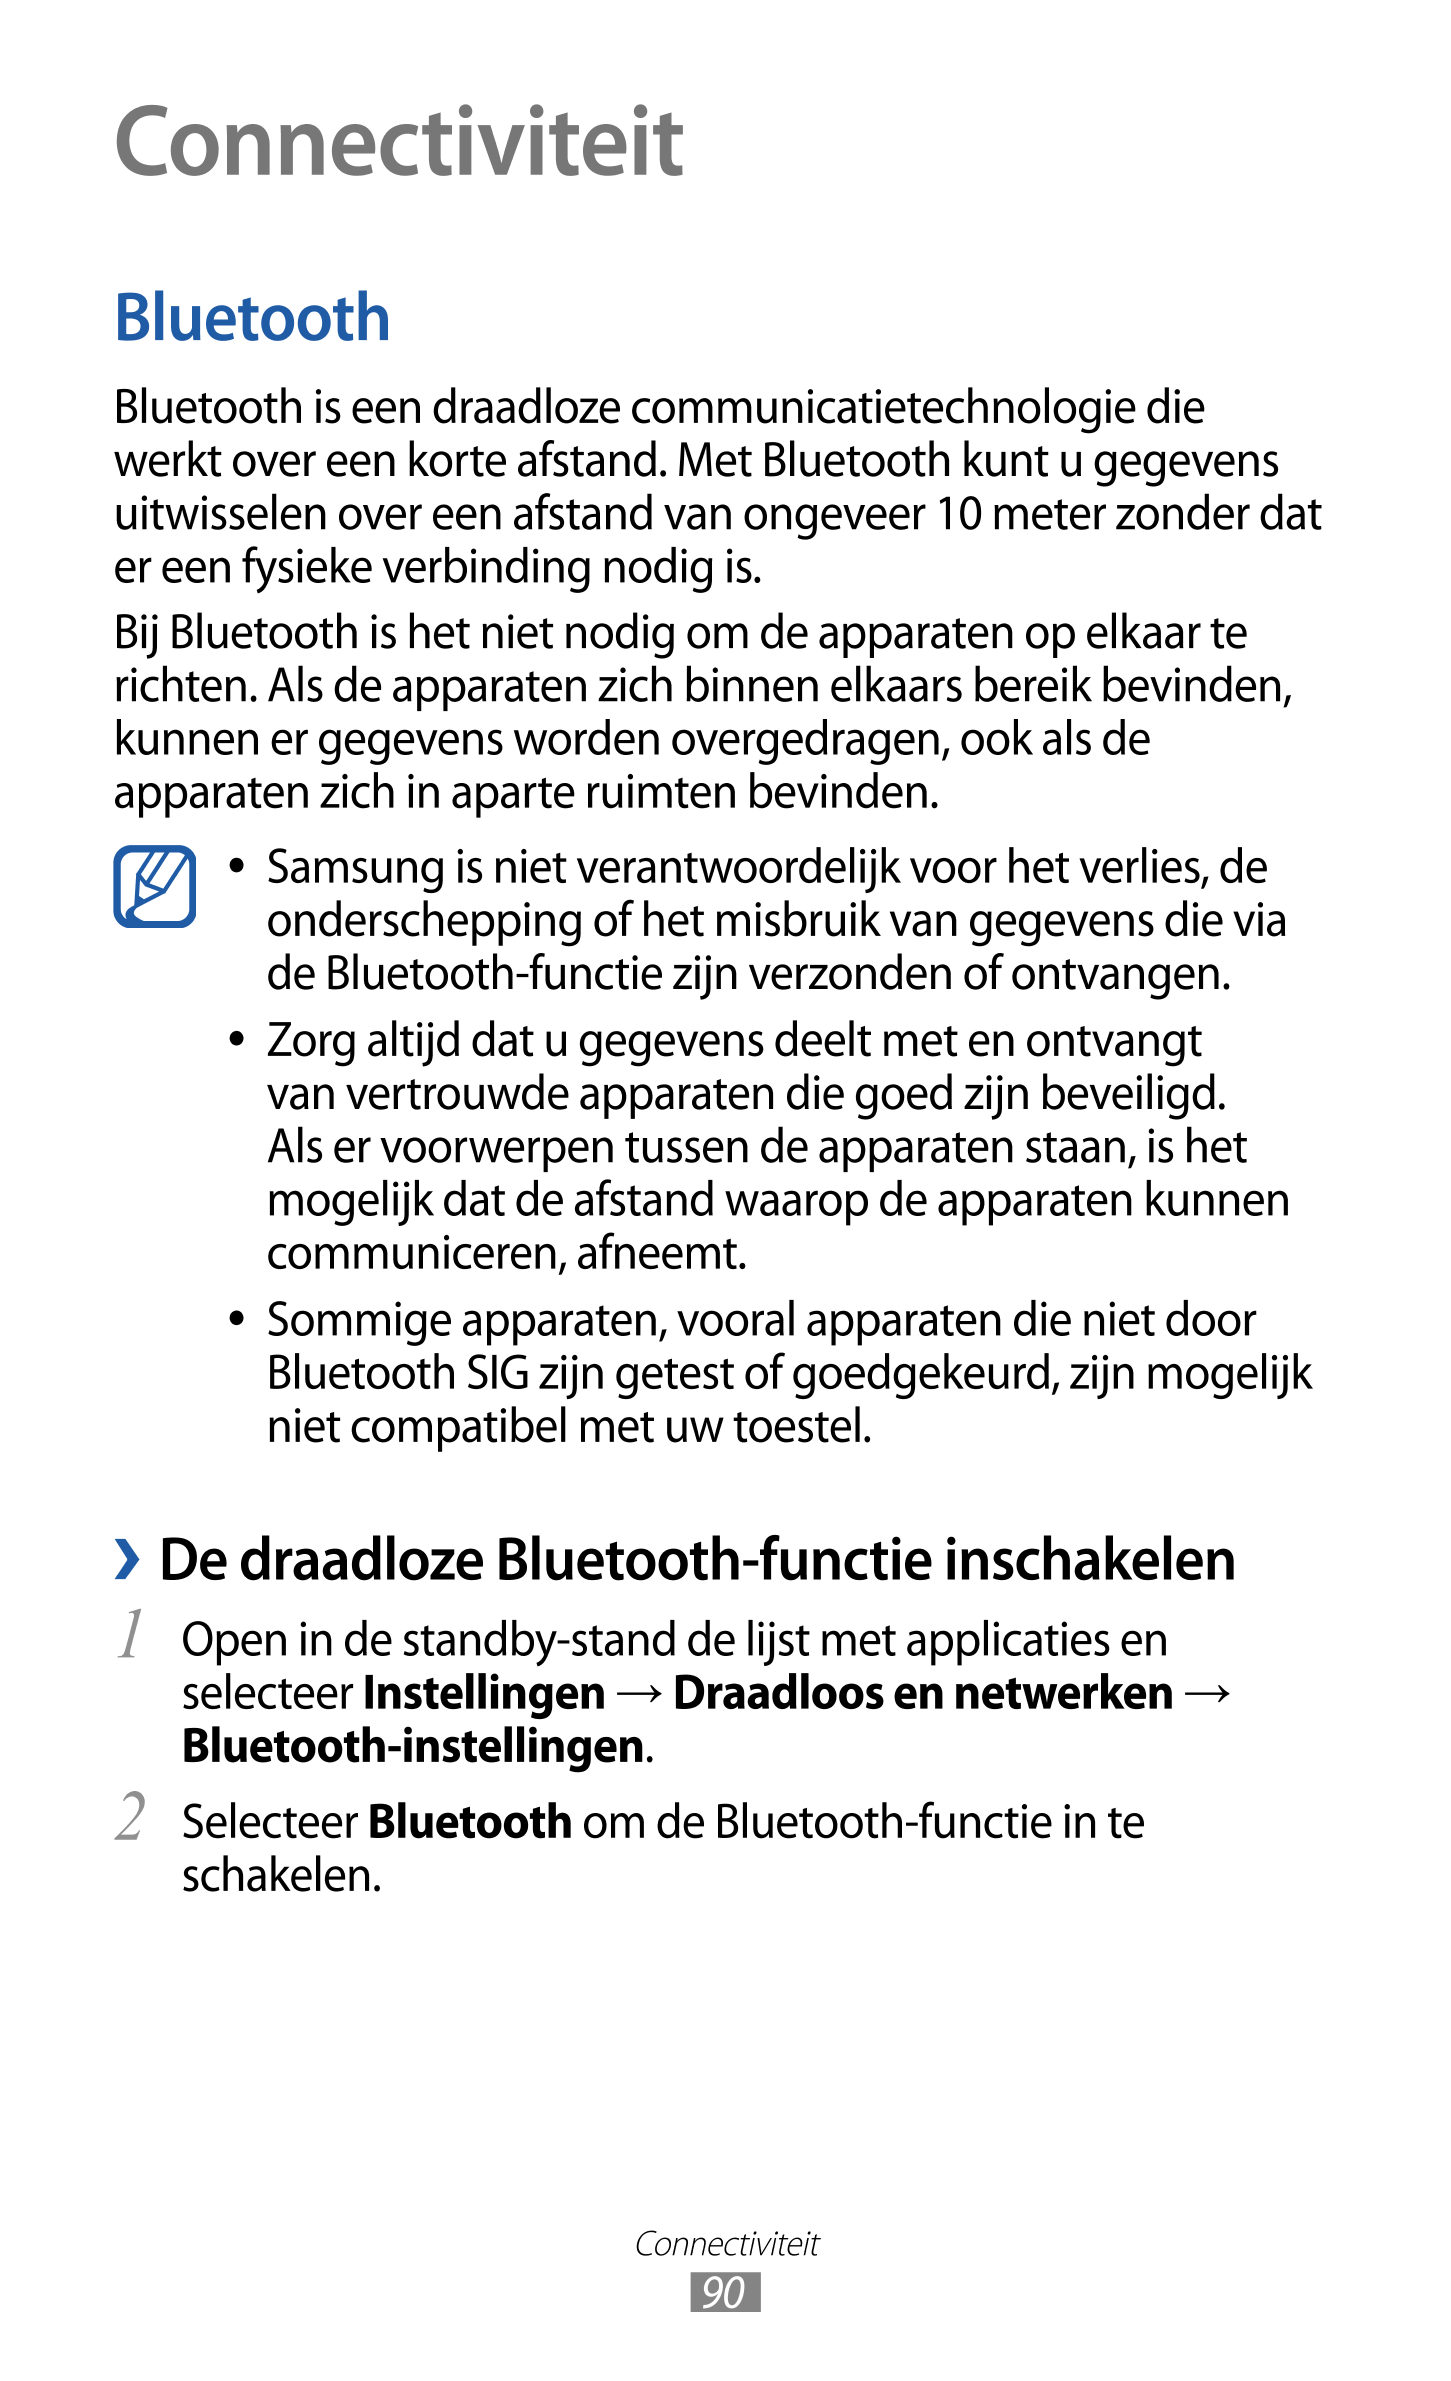 Connectiviteit
Bluetooth
Bluetooth is een draadloze communicatietechnologie die 
werkt over een korte afstand. Met Bluetooth kun